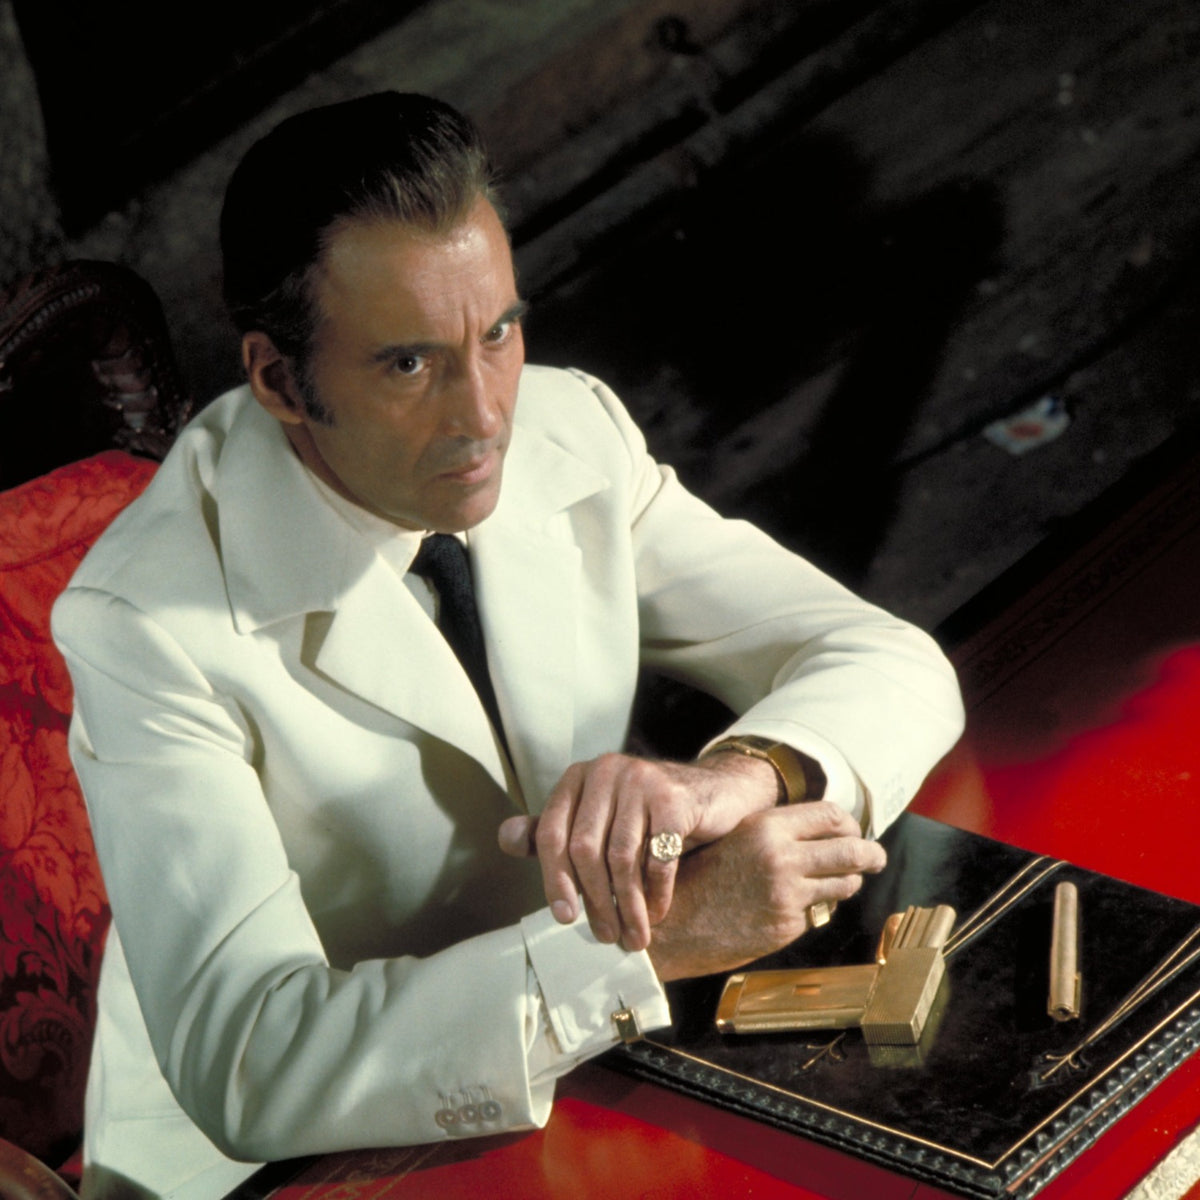 James Bond Gold-plated Golden Gun Cufflinks